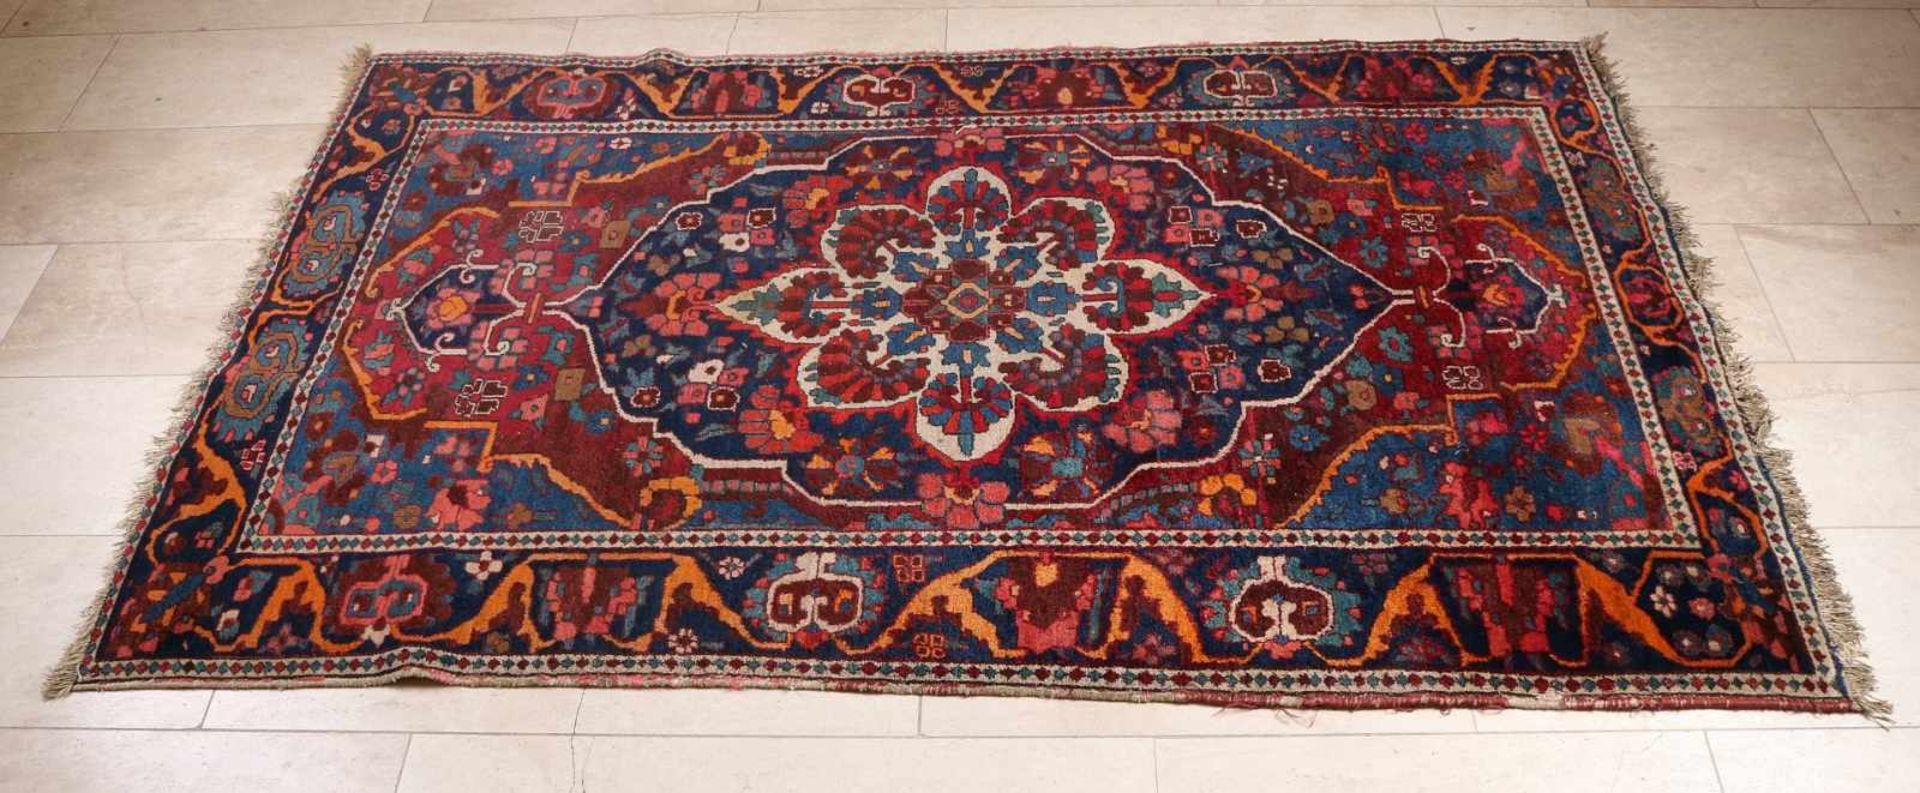 Handgeknüpfter Teppich in den Farben Rot / Blau mit einem großen Medaillon in der Mitte. Größe: